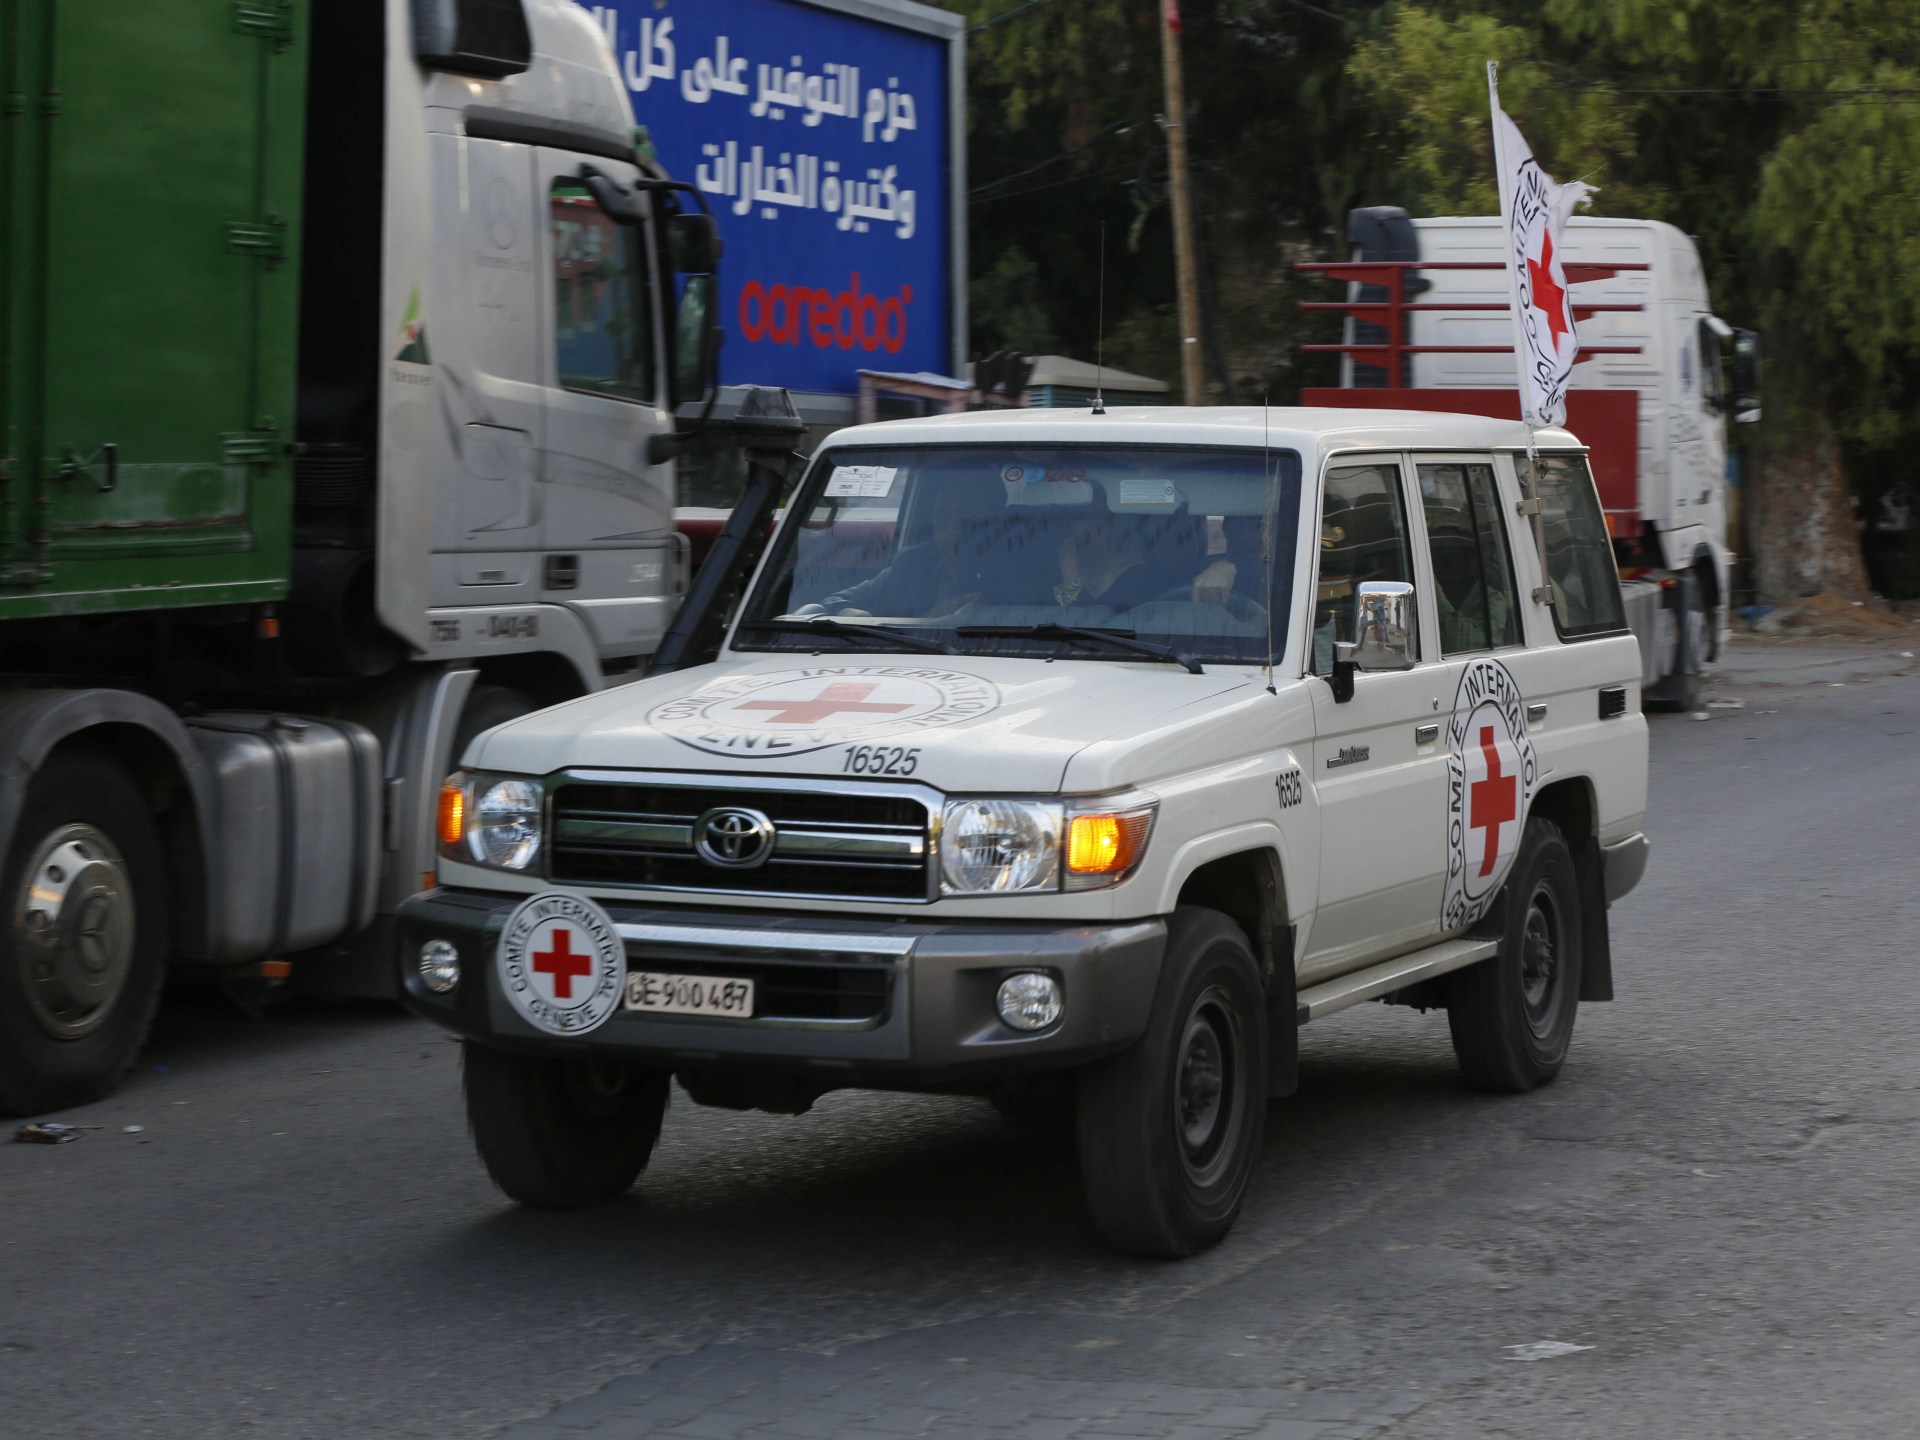 La Cruz Roja está “profundamente perturbada” tras el ataque al convoy de ayuda en la ciudad de Gaza |  Noticias del conflicto palestino-israelí